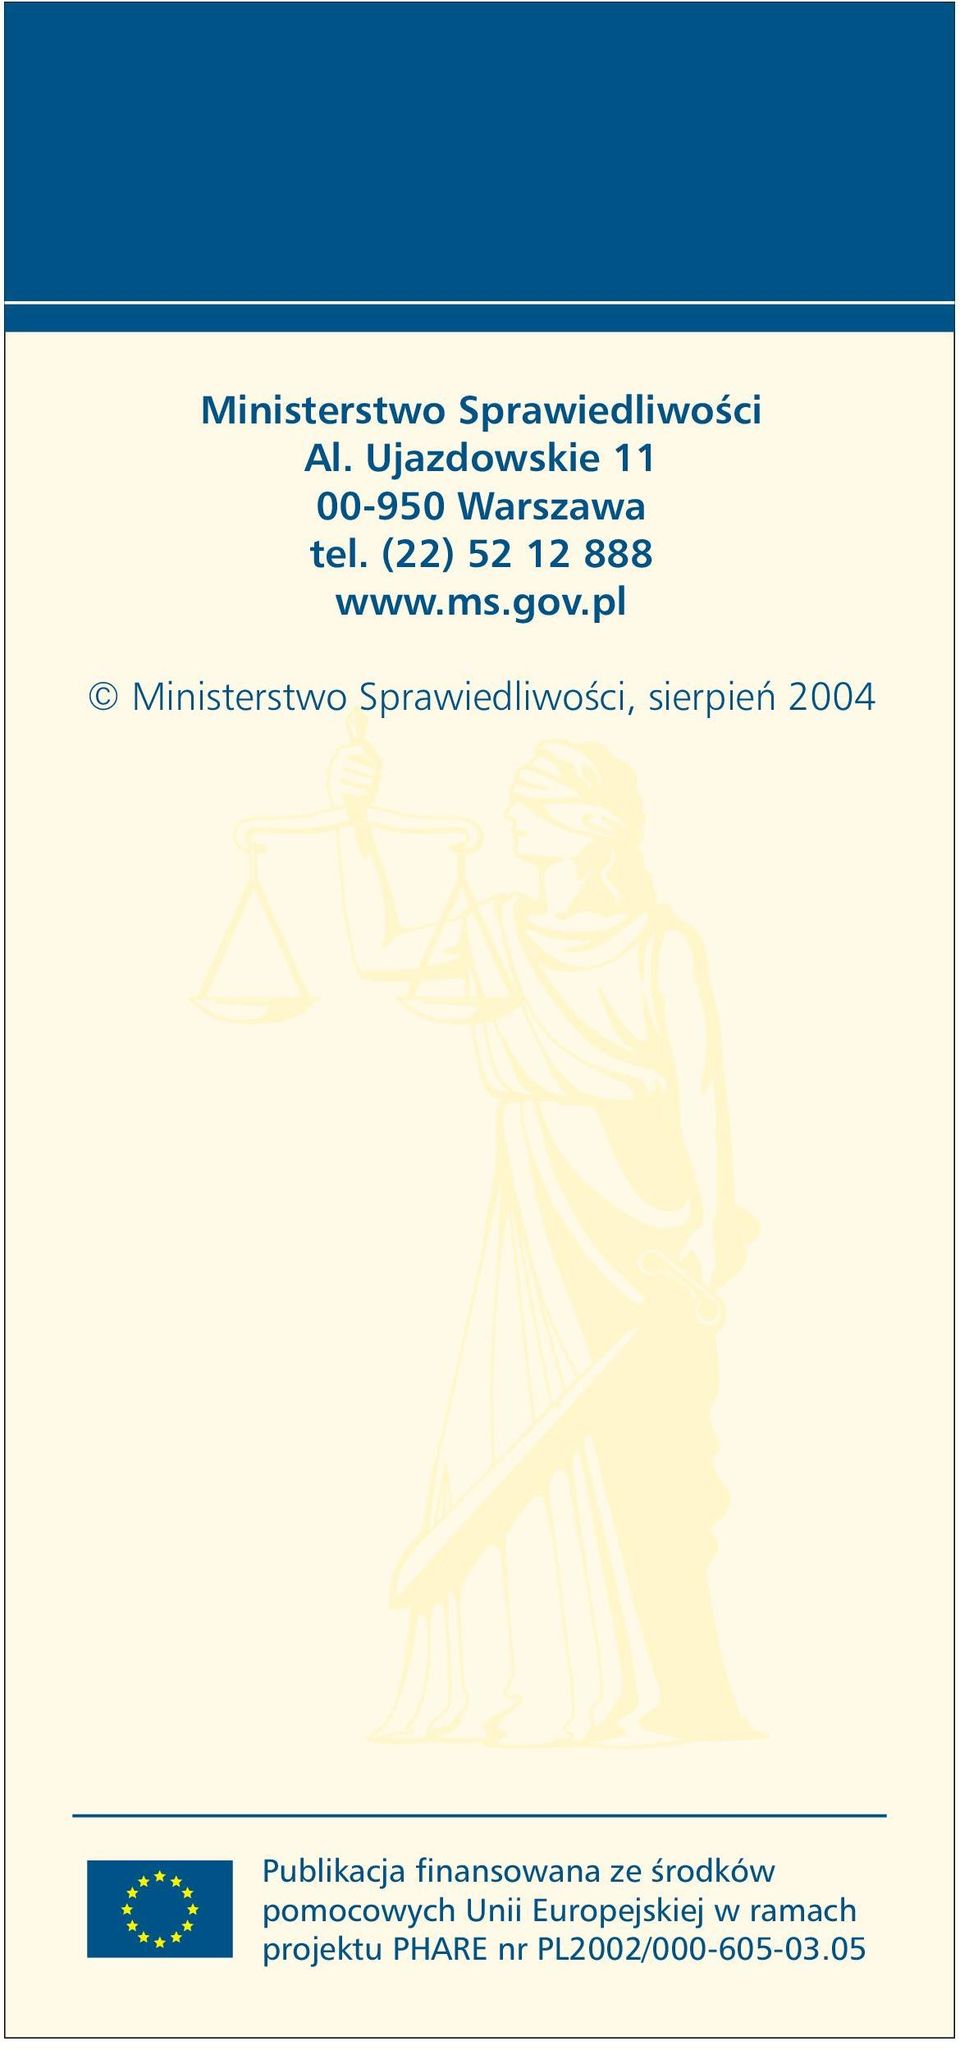 pl Ministerstwo Sprawiedliwości, sierpień 2004 Publikacja